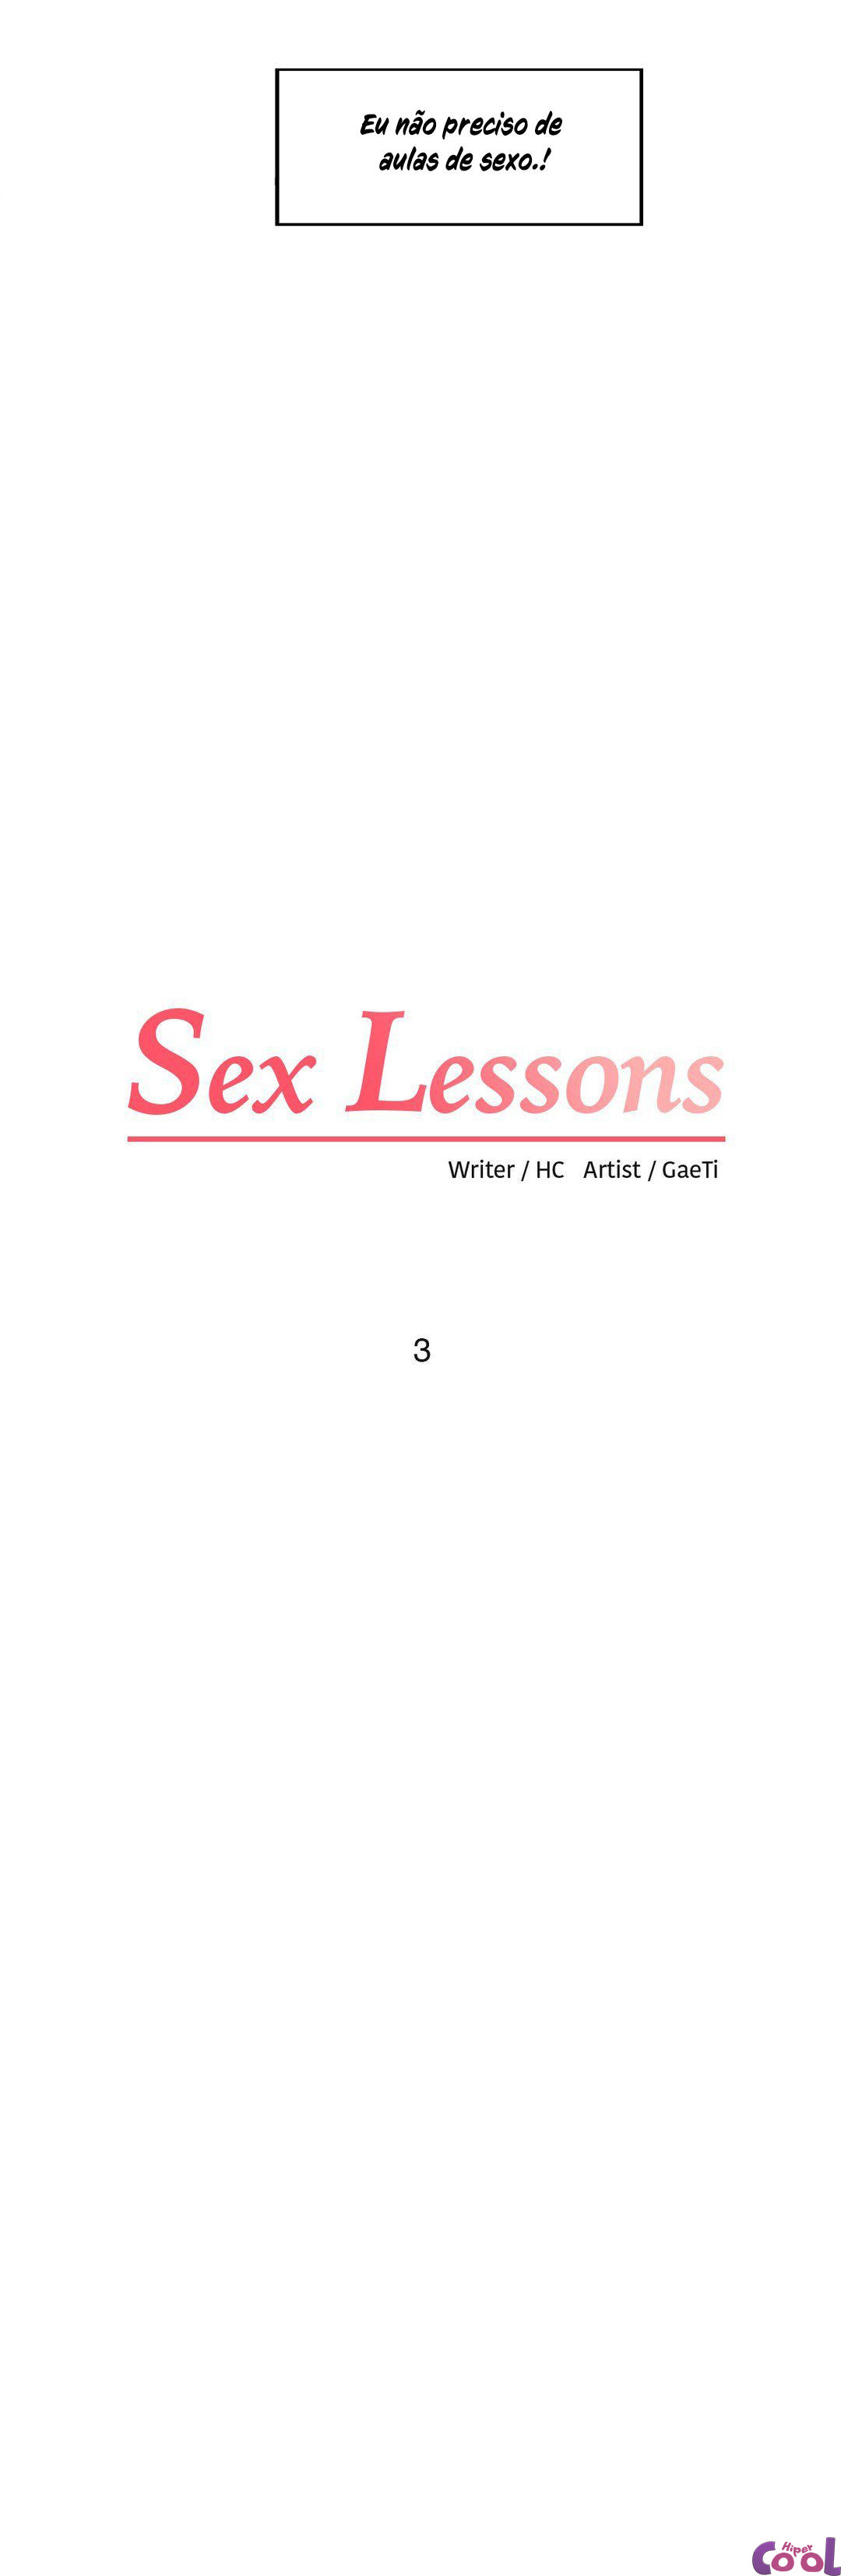 Me ensinar fazer sexo 03 - Foto 3